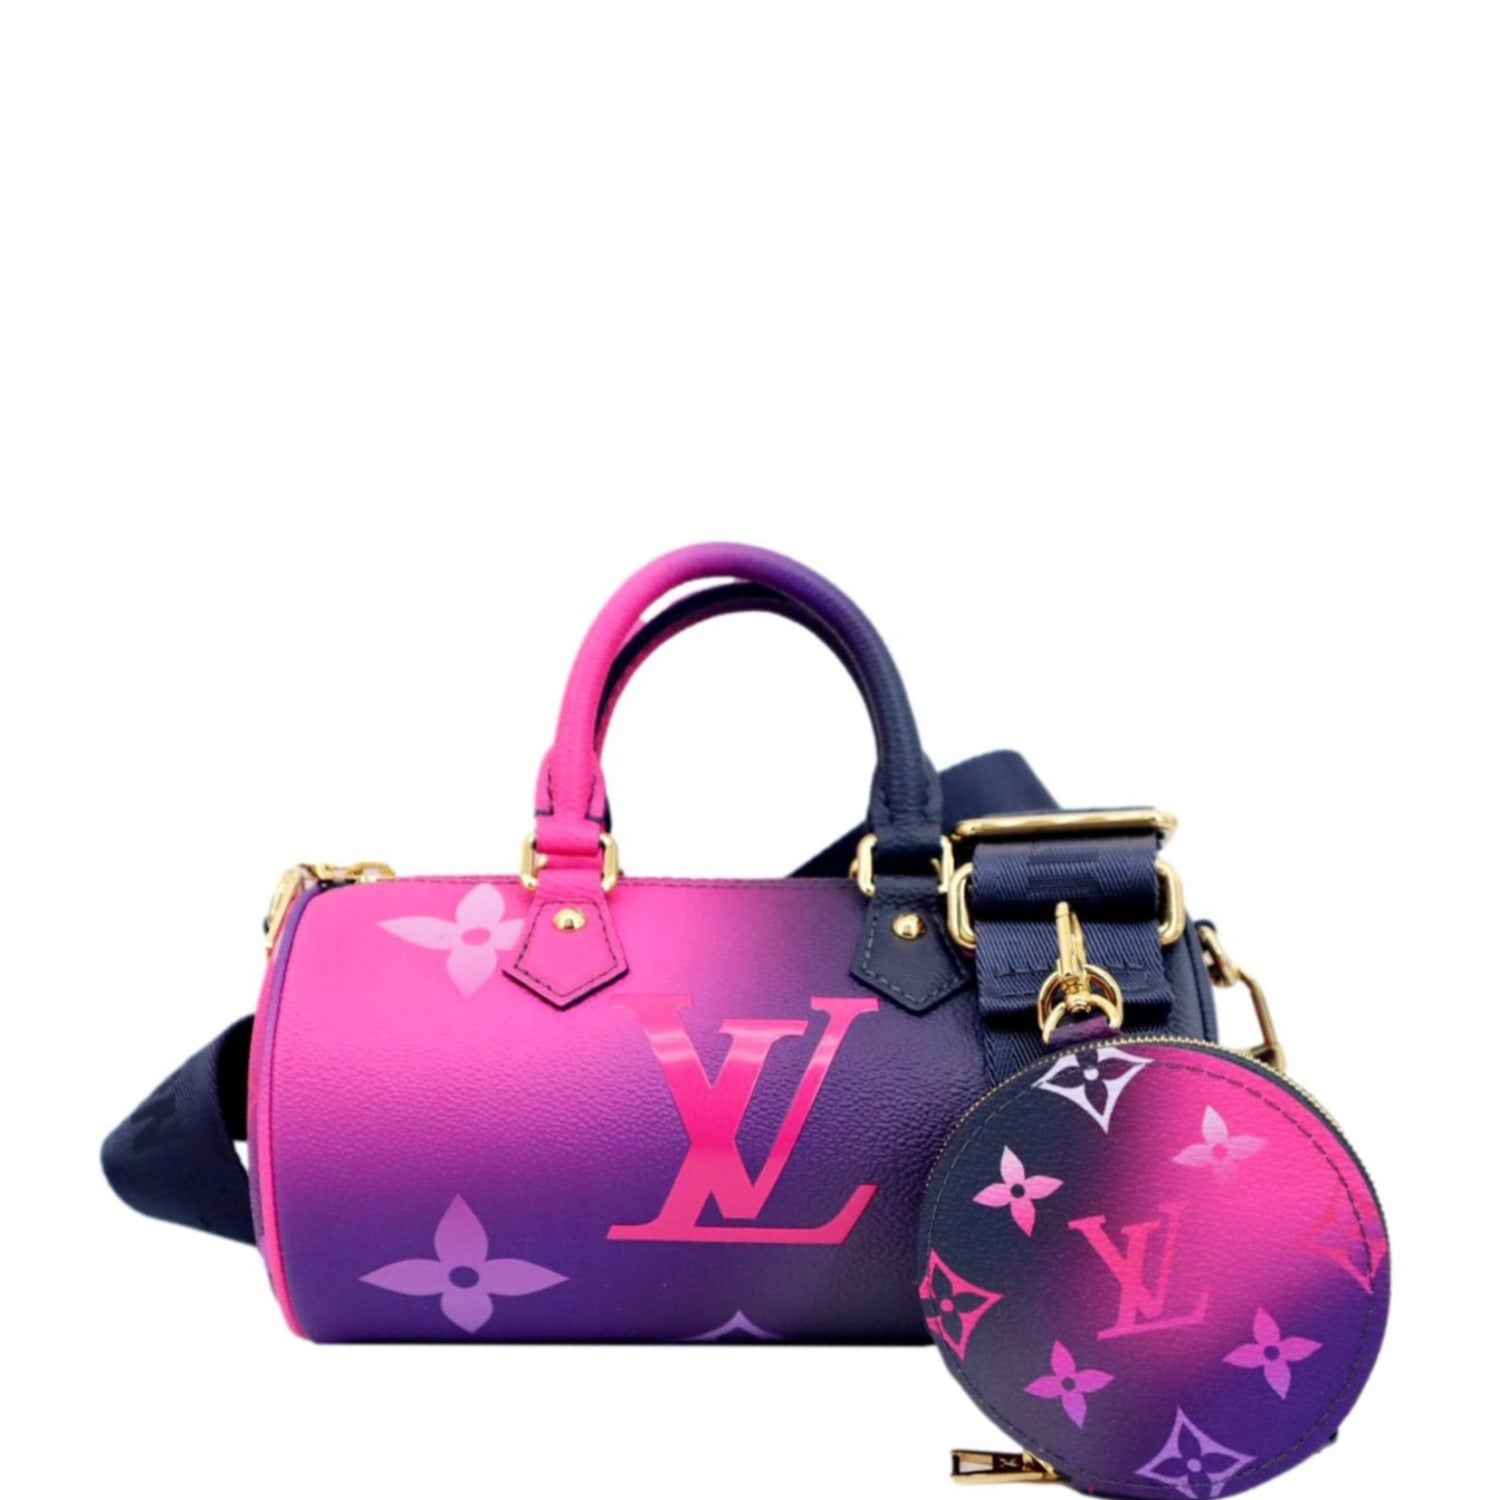 purple and pink lv bag